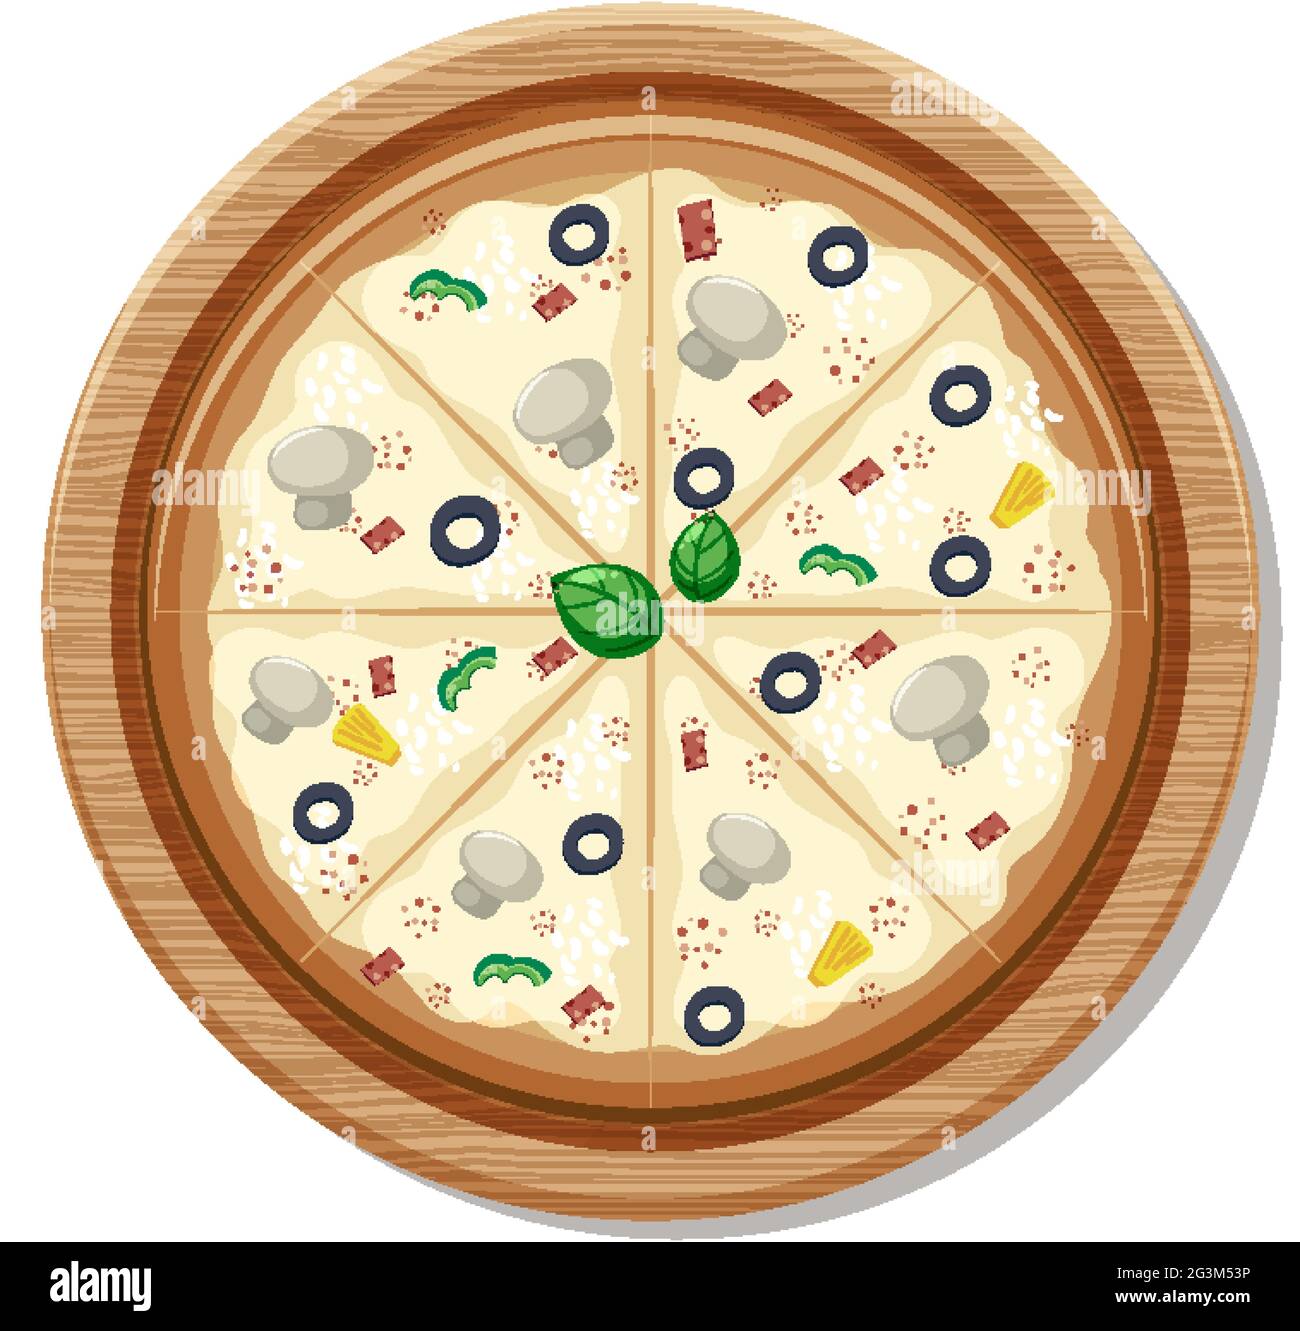 Vue de dessus d'une pizza végétalienne entière sur une assiette en bois illustration isolée Illustration de Vecteur